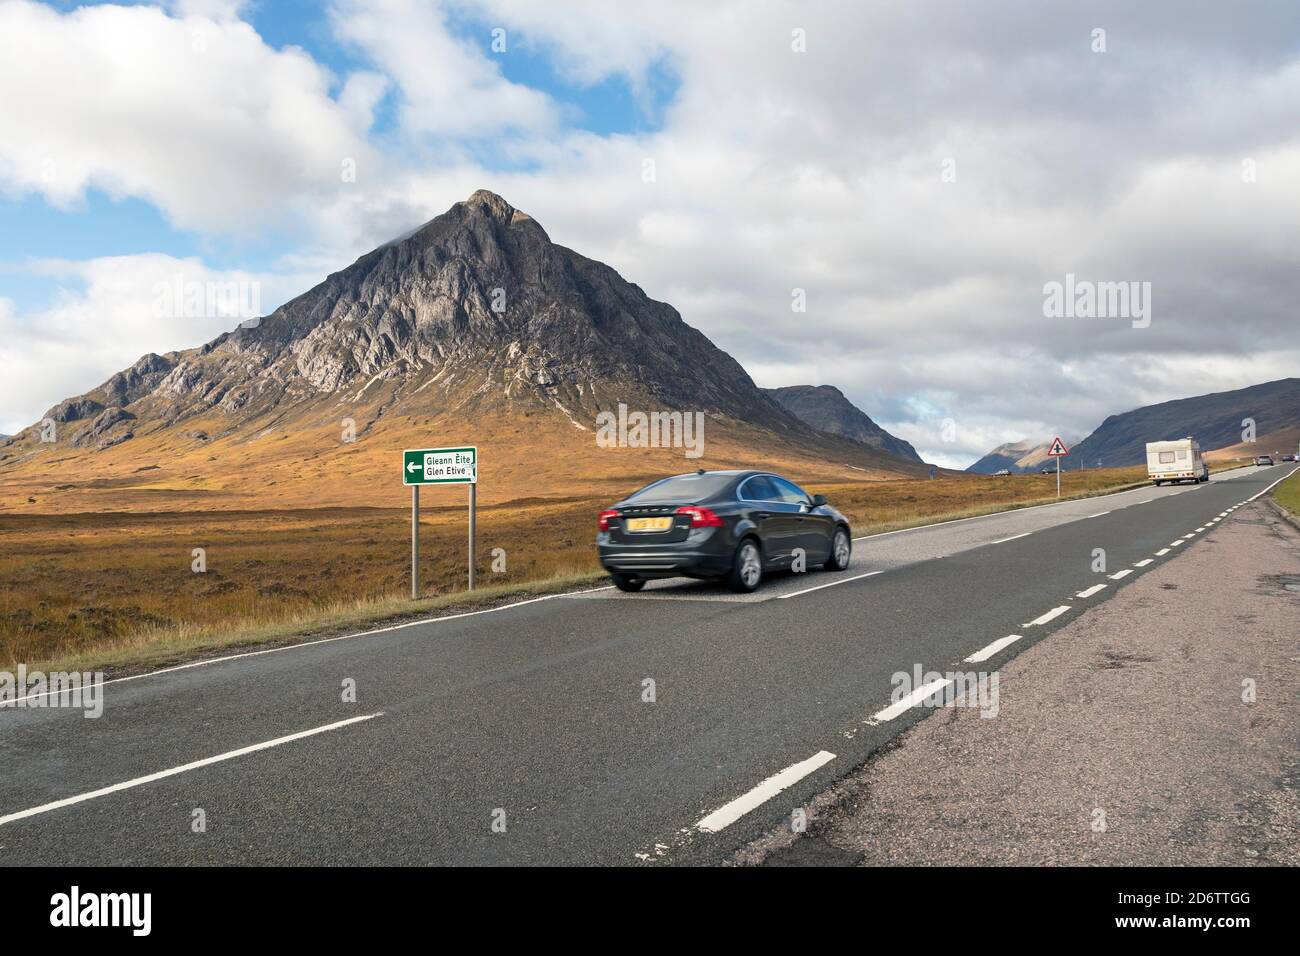 Trafic sur la route A82 avec la montagne de Buachaville Etive Mor comme toile de fond, Glencoe, Highland, Écosse, Royaume-Uni Banque D'Images